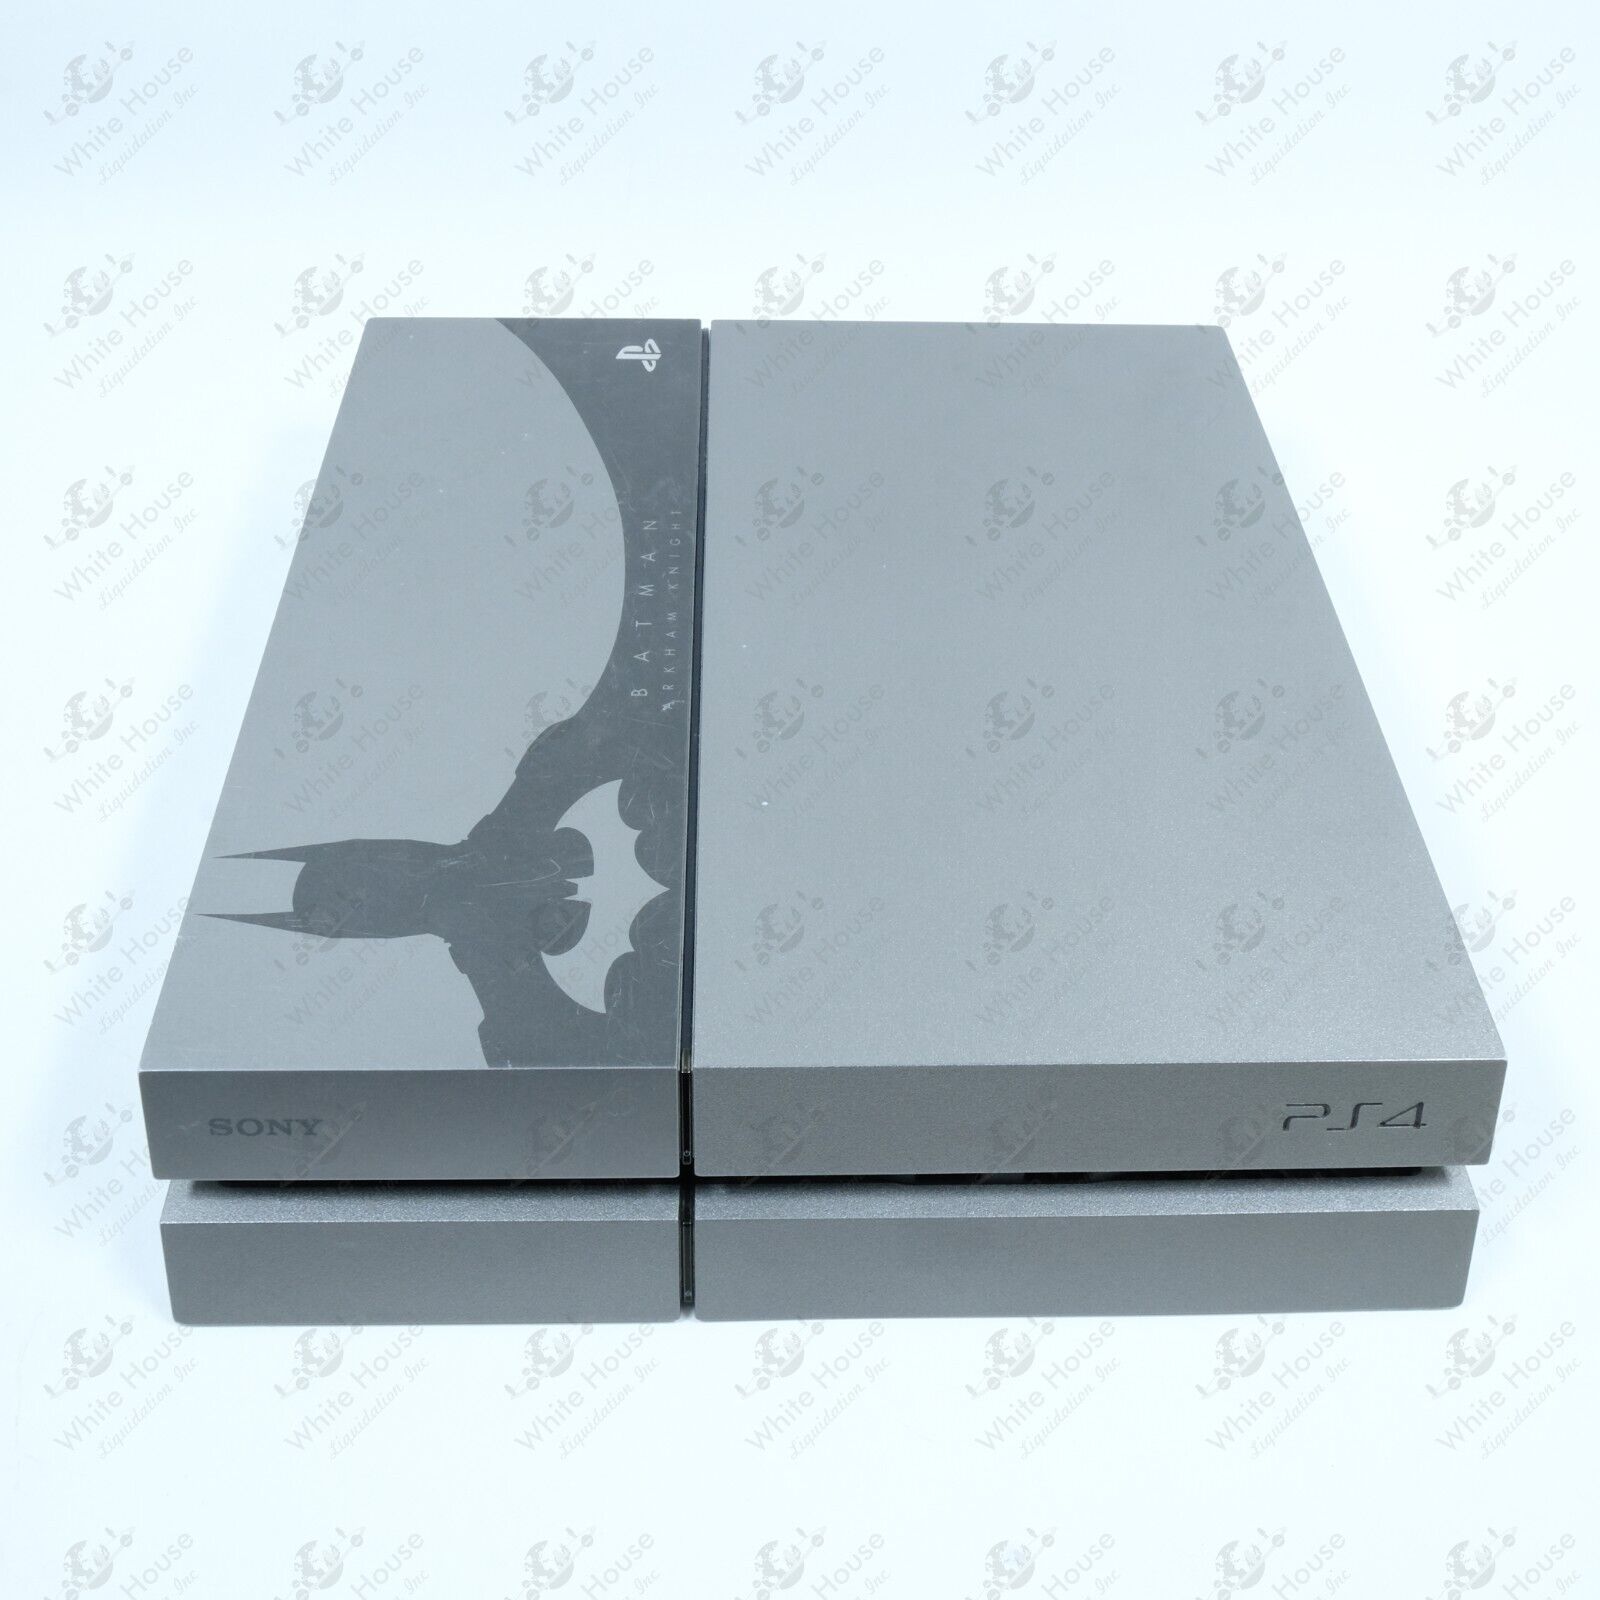 Sony PlayStation 4 Batman 500GB Grey Console (CUH 1115A)